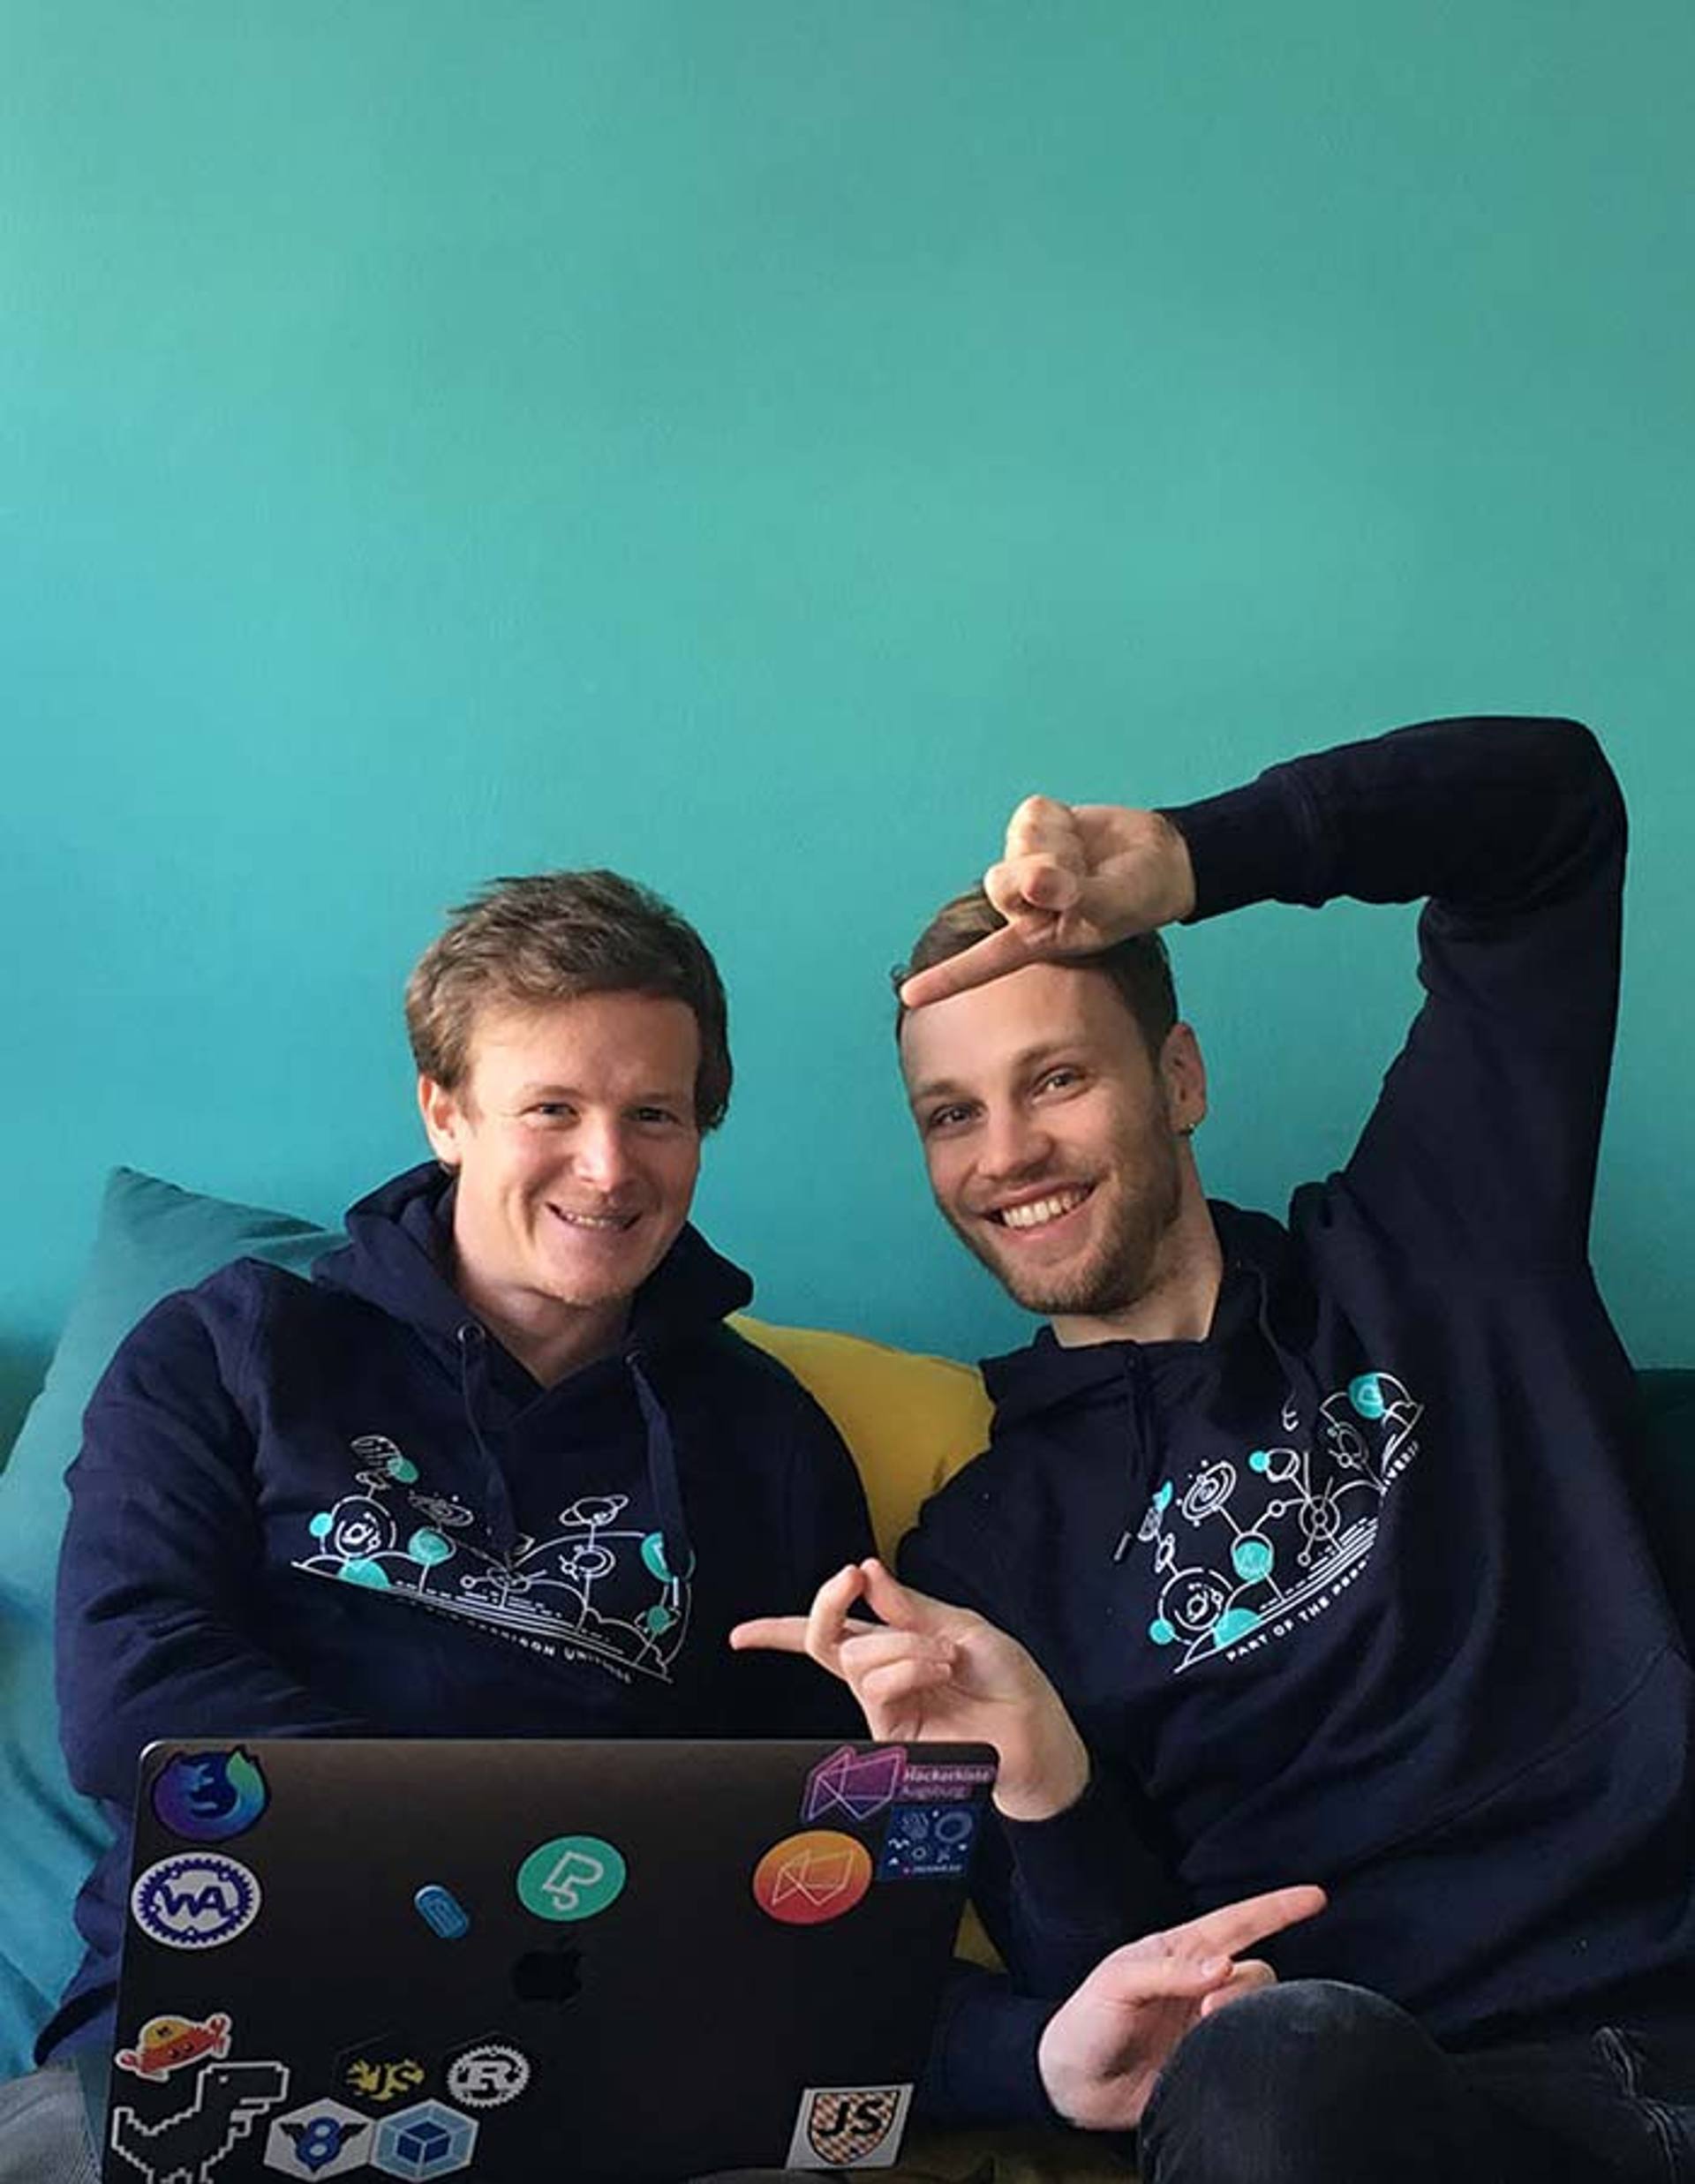 Zwei Mitarbeiter der Peerigon Agentur für Softwareentwicklung zeigen ihre neuen Pullover